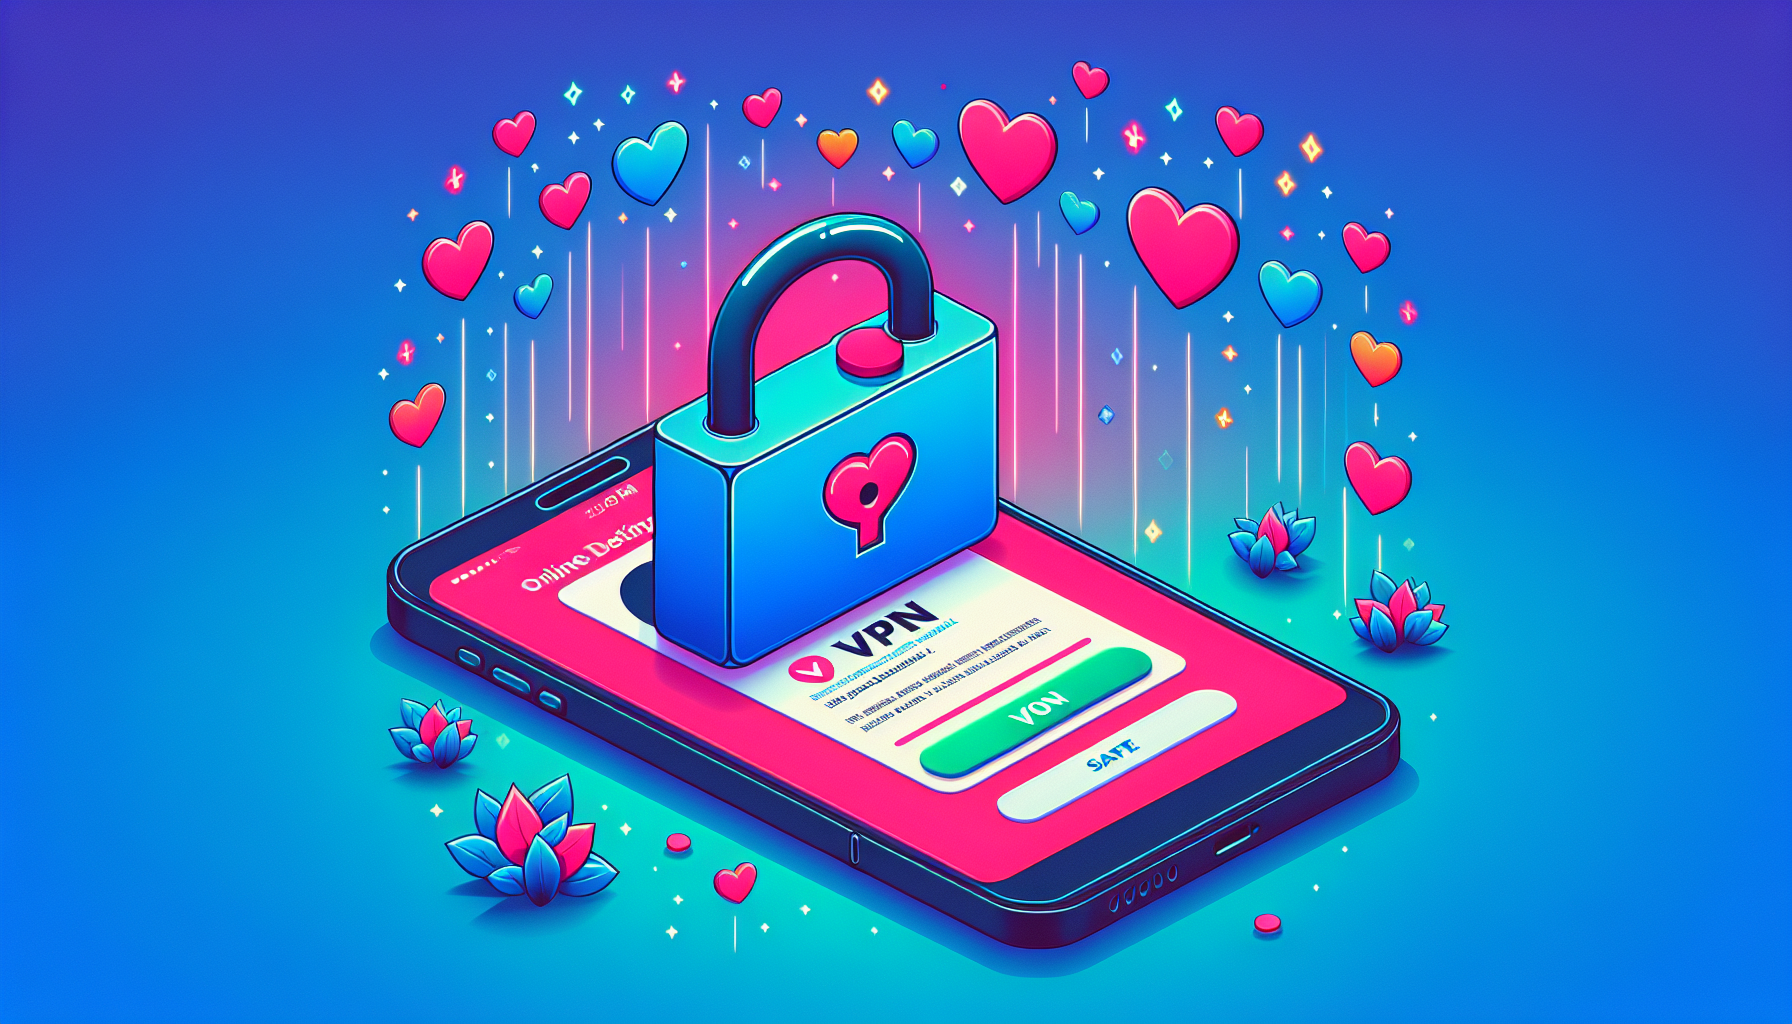 Protégez votre expérience de rencontres en ligne avec un VPN pour Tinder